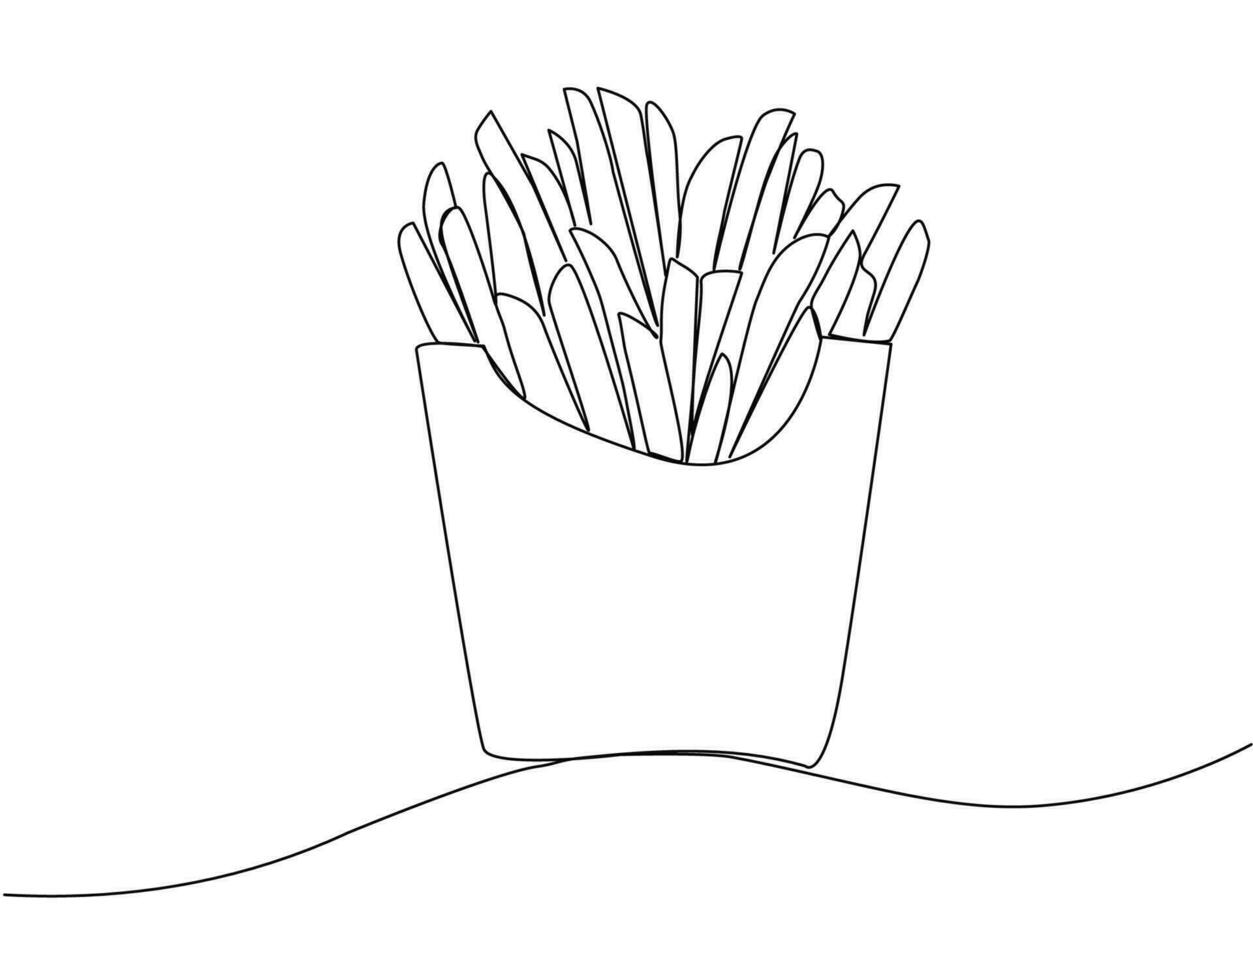 Frans Patat in doorlopend lijn kunst. gebakken aardappel stokjes in modern single lijn tekening stijl. vector illustratie.